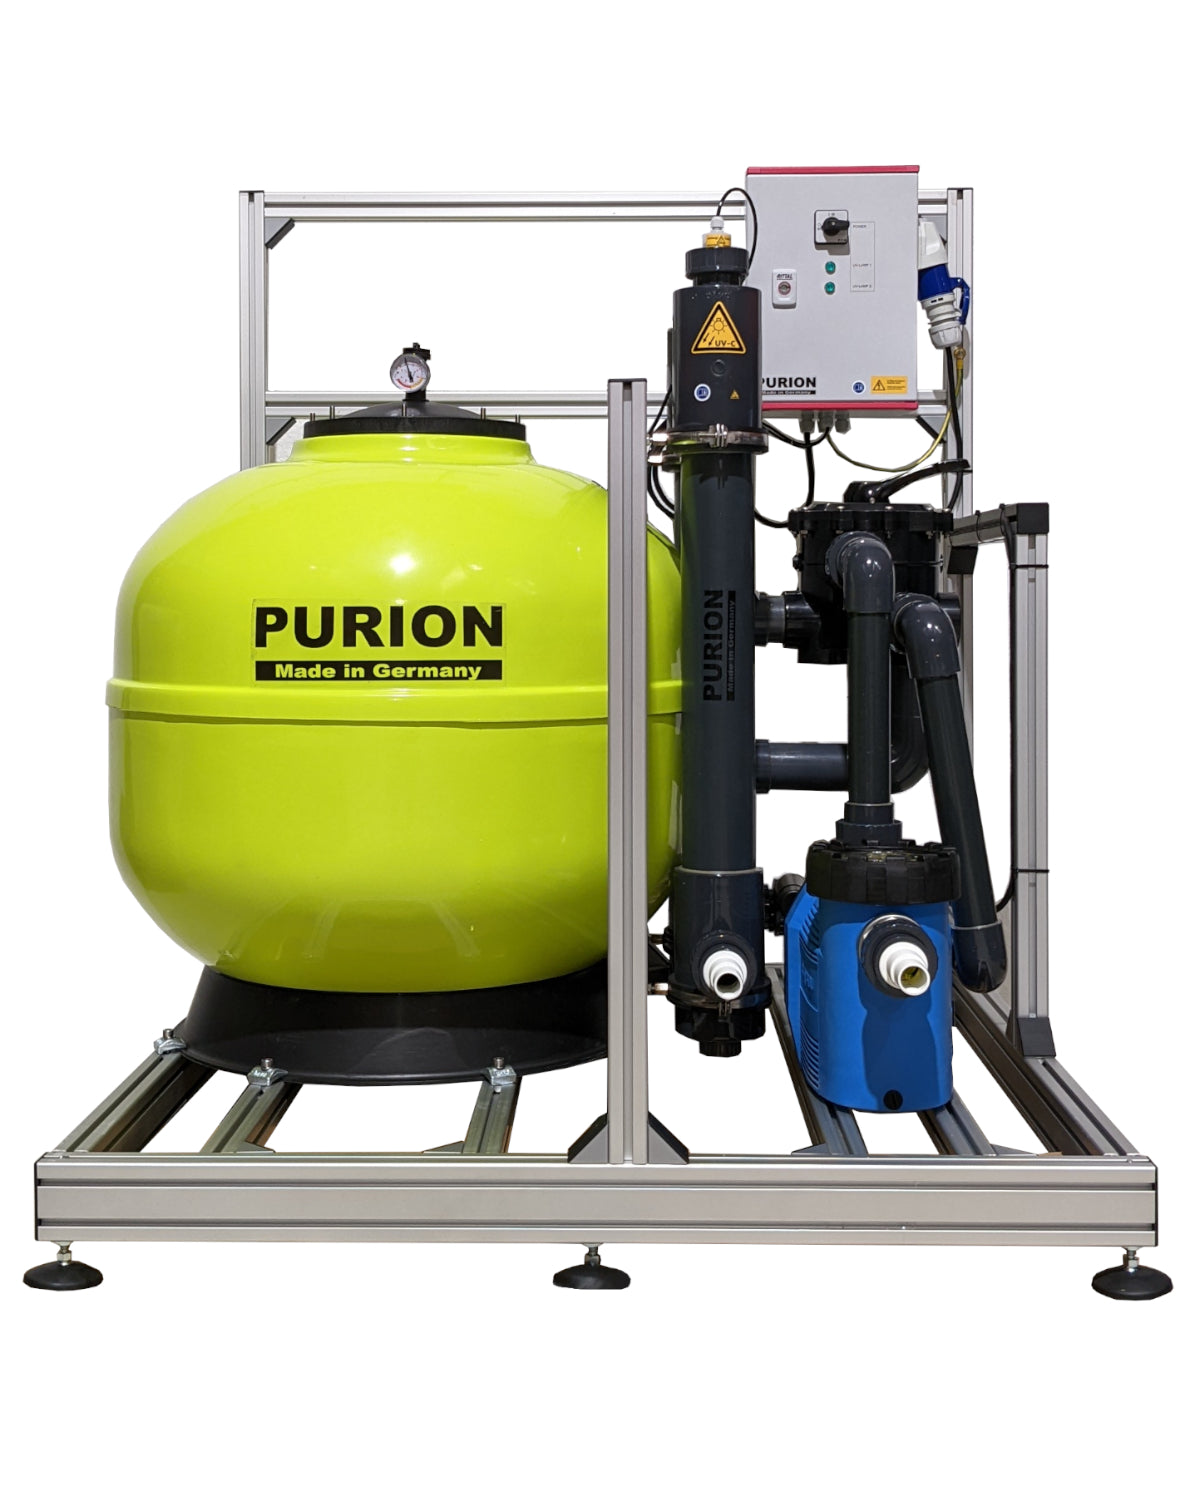 Das PURION Pool Luxury PVC-U-Reinigungssystem nutzt einen hochwertigen Sandfilter und UV-basierte Desinfektion der UV Concept GmbH zur Reinigung des Poolwassers.